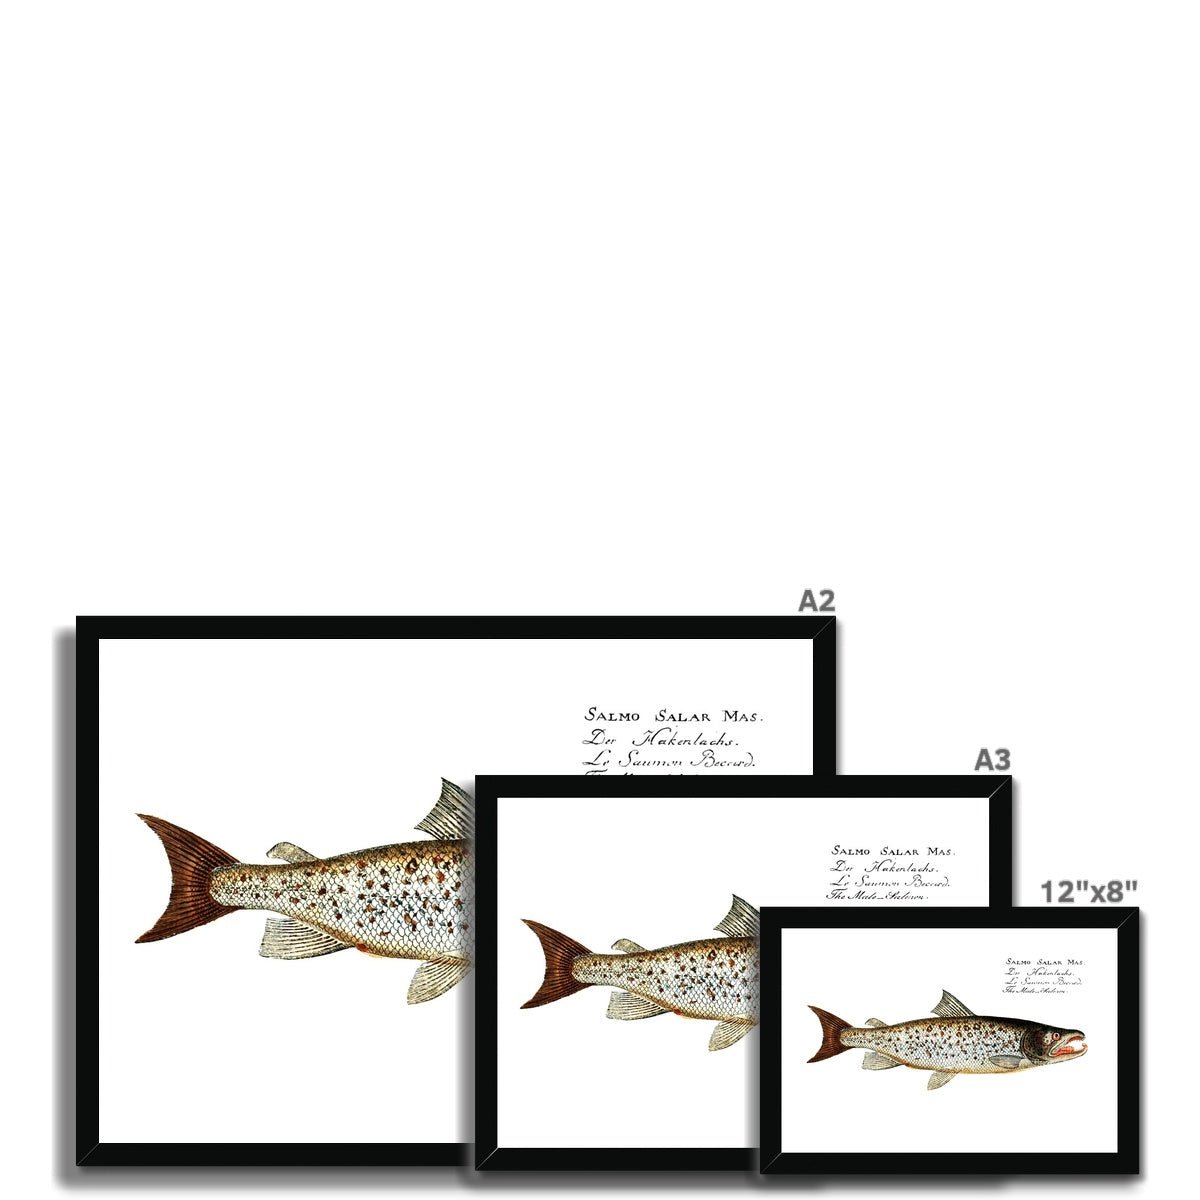 Atlantic Salmon - Vintage Framed Print - madfishlab.com